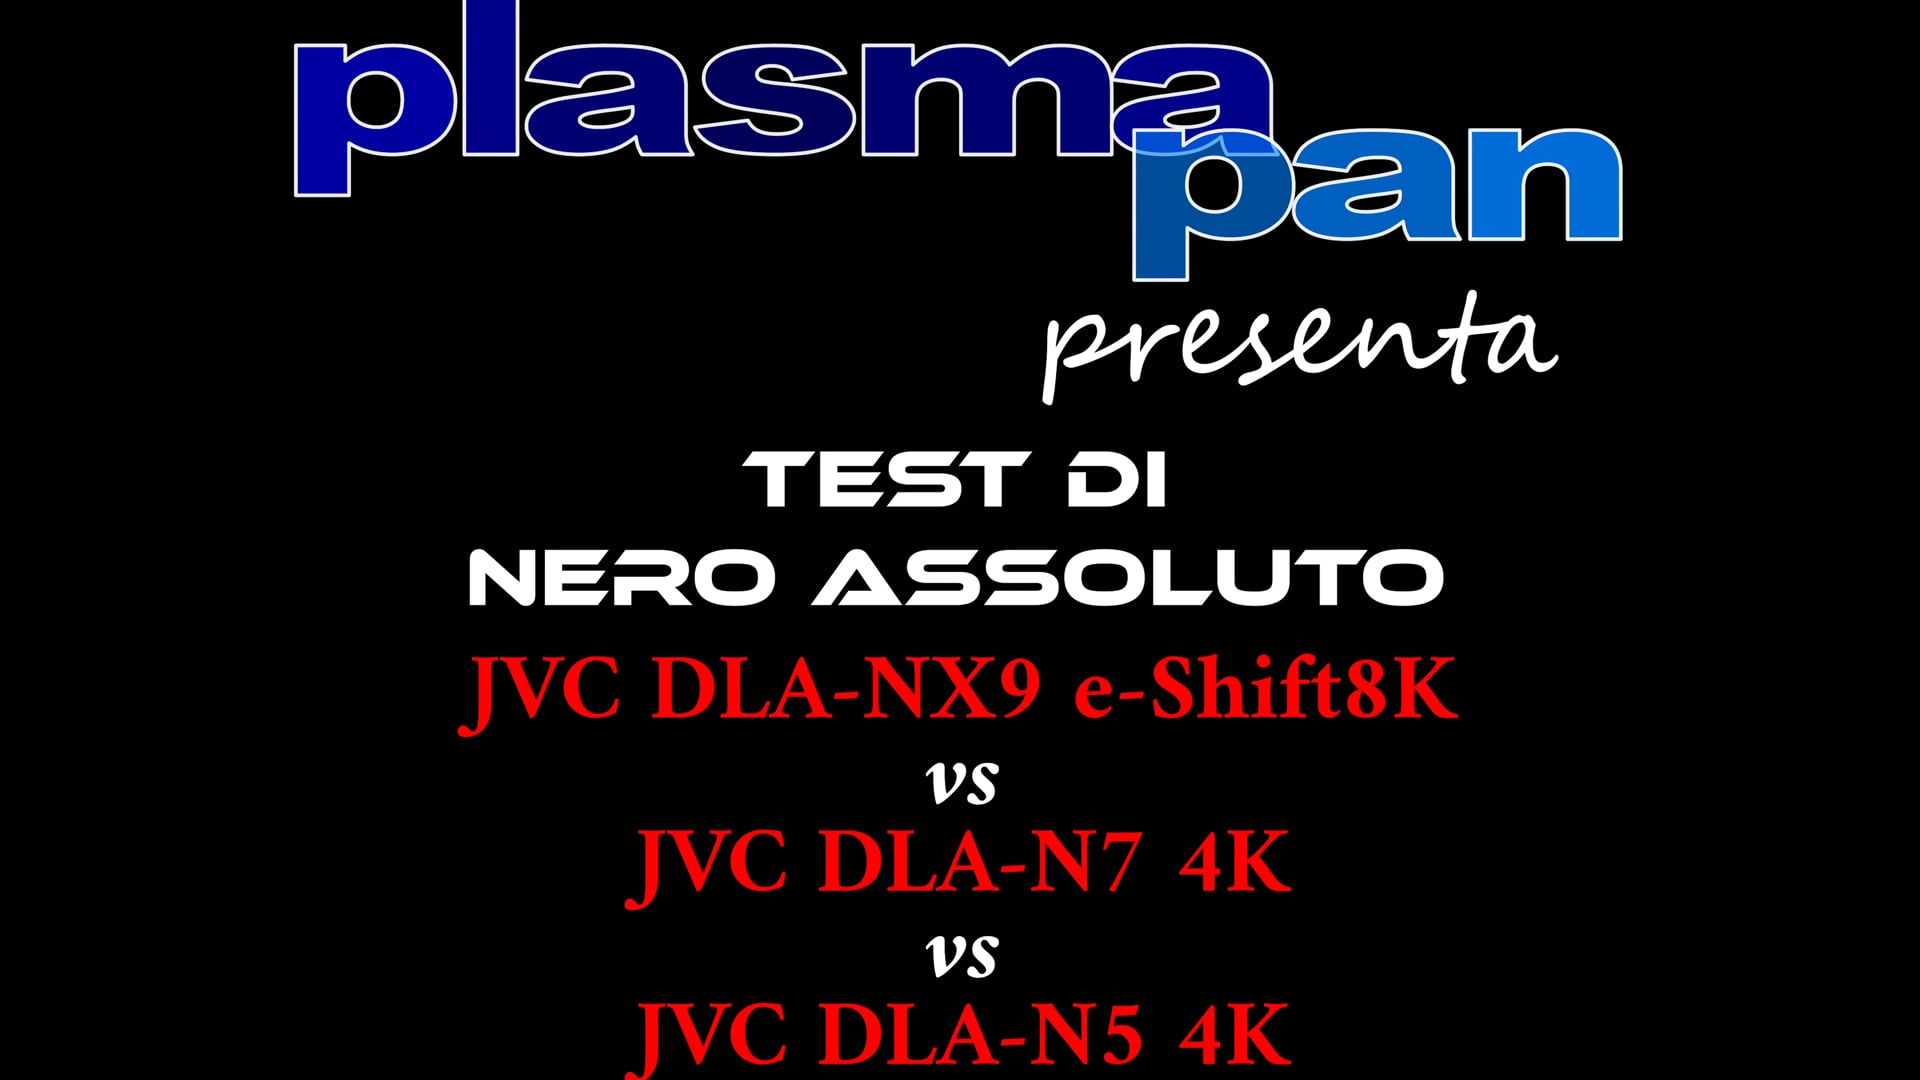 Plasmapan TUBE 03/03/19 : JVC DLA-NX9 vs DLA-N7 vs DLA-N5 : NERO ASSOLUTO / Vignini - Bolognini